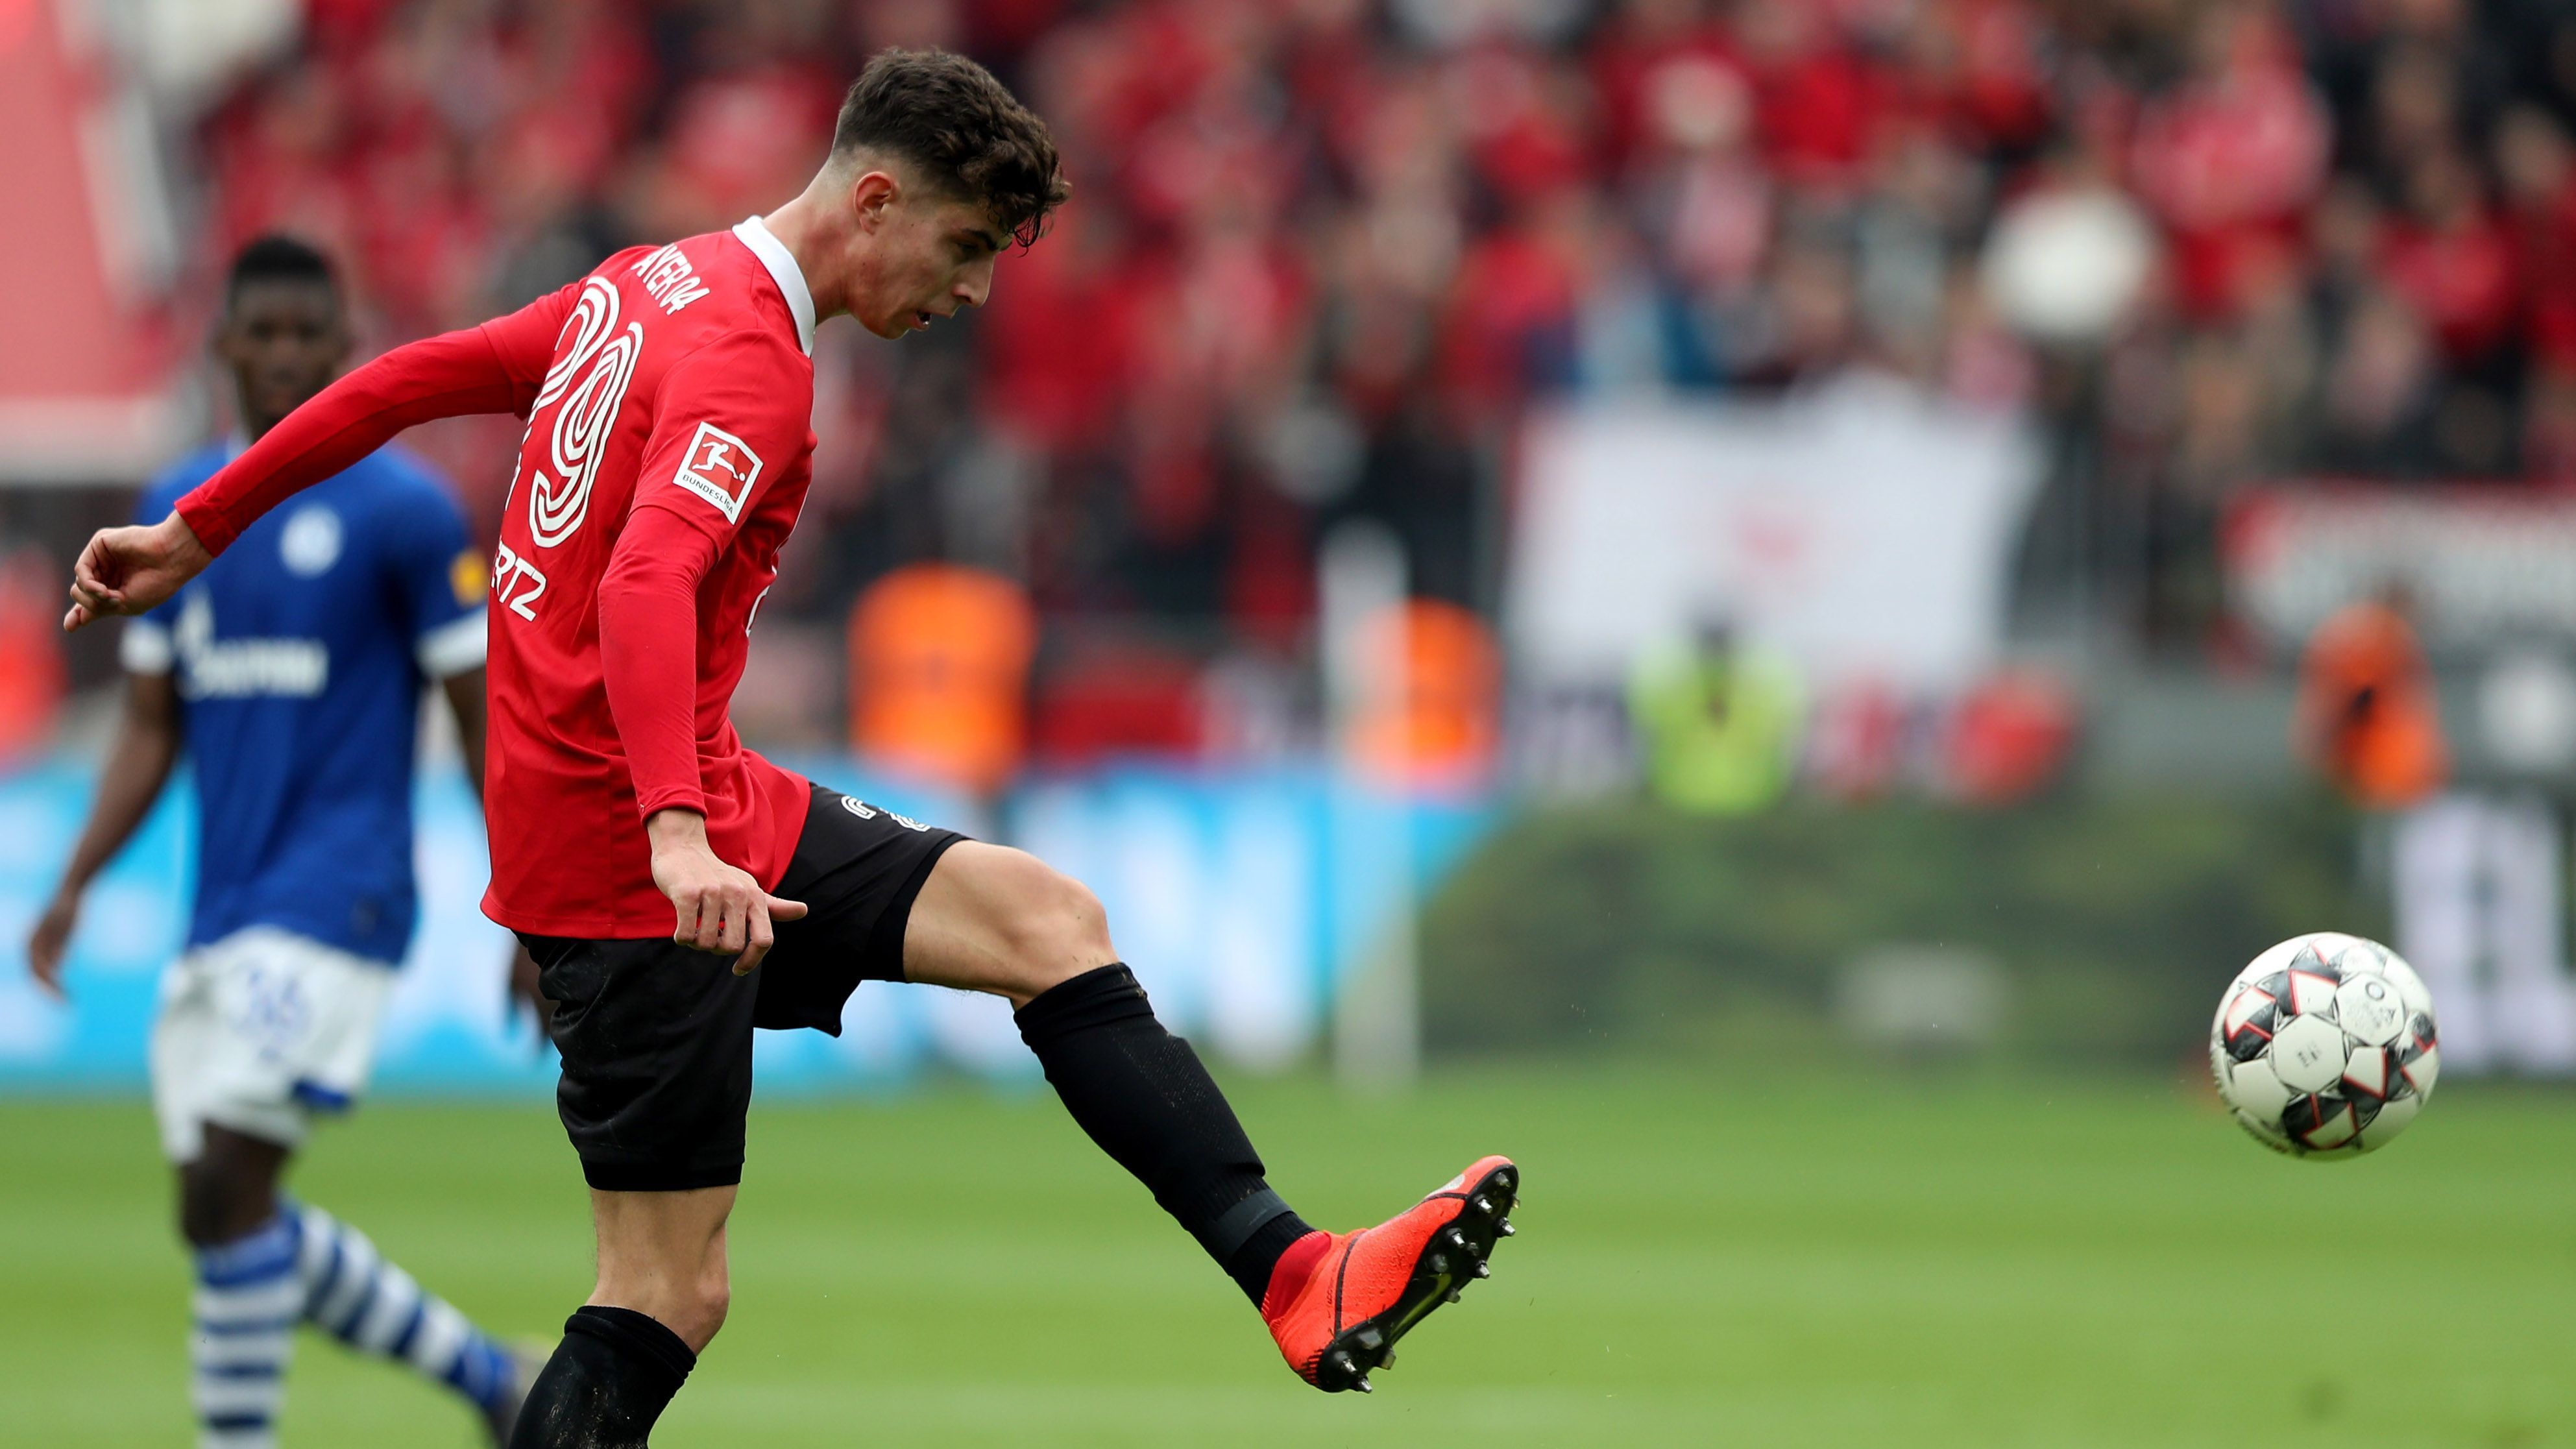 
                <strong>Offensives Mittelfeld</strong><br>
                Kai Havertz von Bayer Leverkusen, gewählt mit 65,3 Prozent. Dritter Platz bei Wahl zum Spieler der Saison mit 12,4 Prozent der Stimmen. 
              